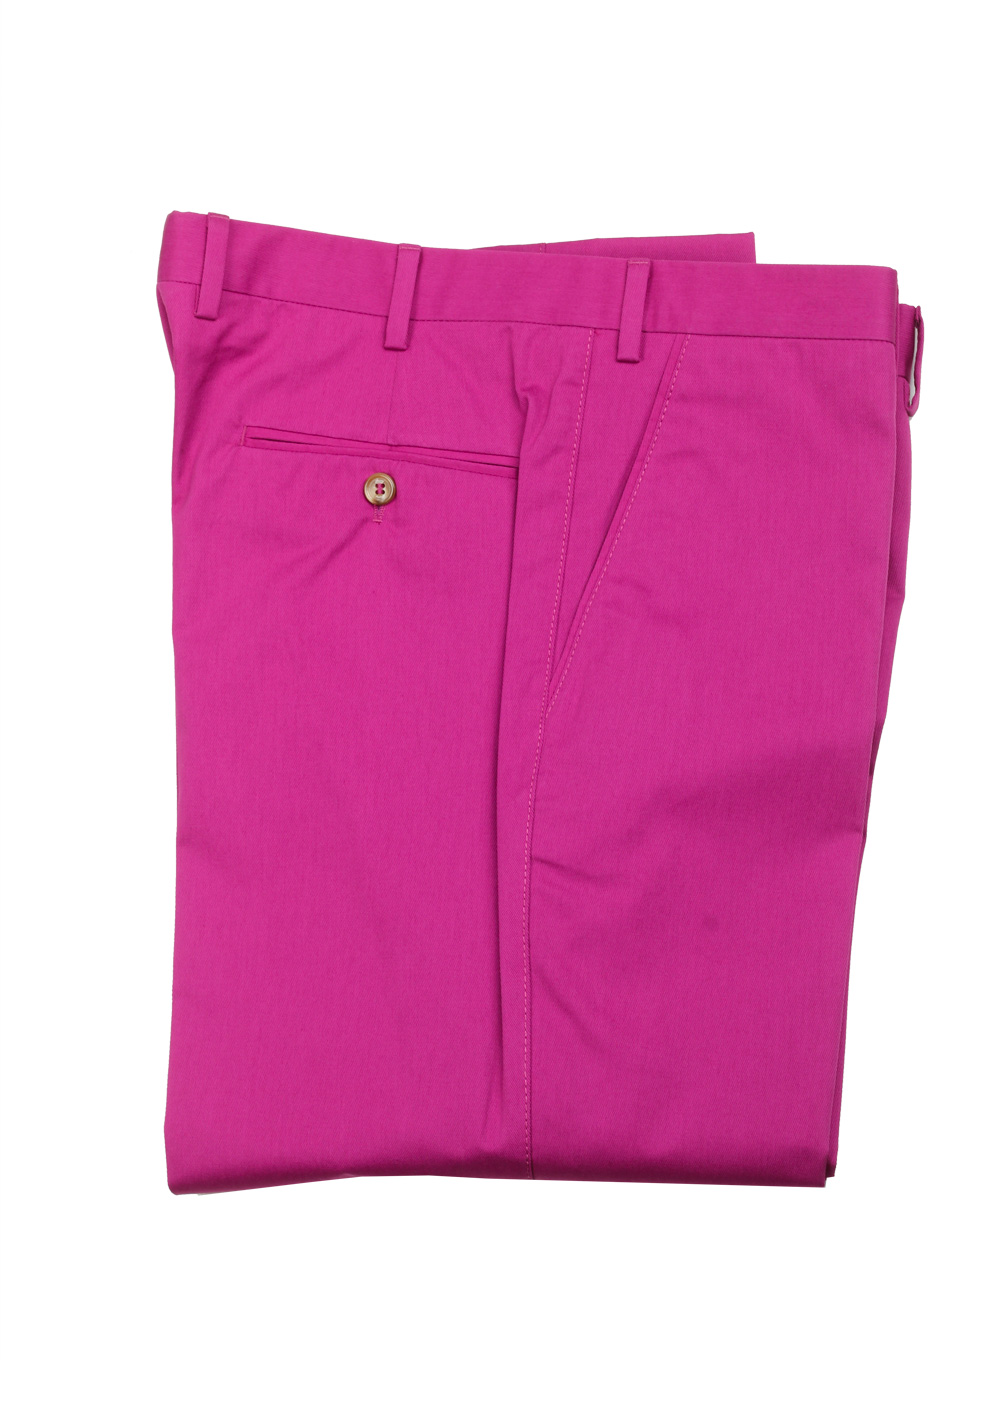 Brioni Pink Cotton Trousers Size 52 / 36 U.S. | Costume Limité